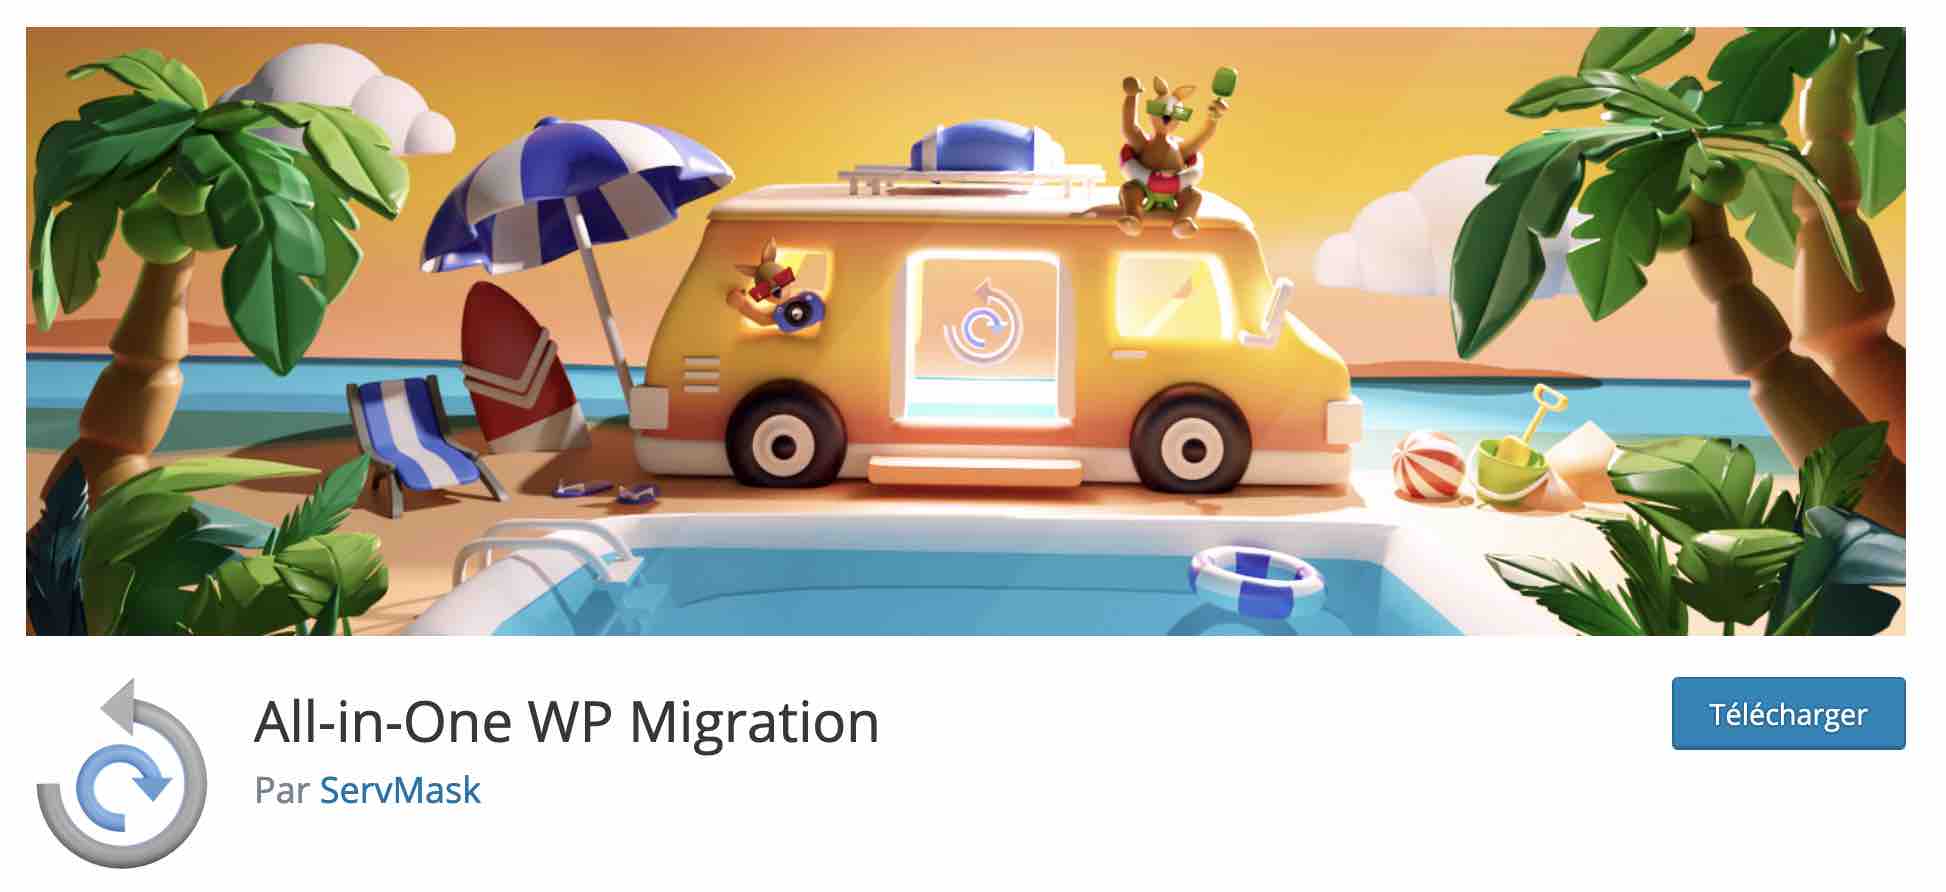 All-in-One WP Migration est un plugin de migration sur WordPress.